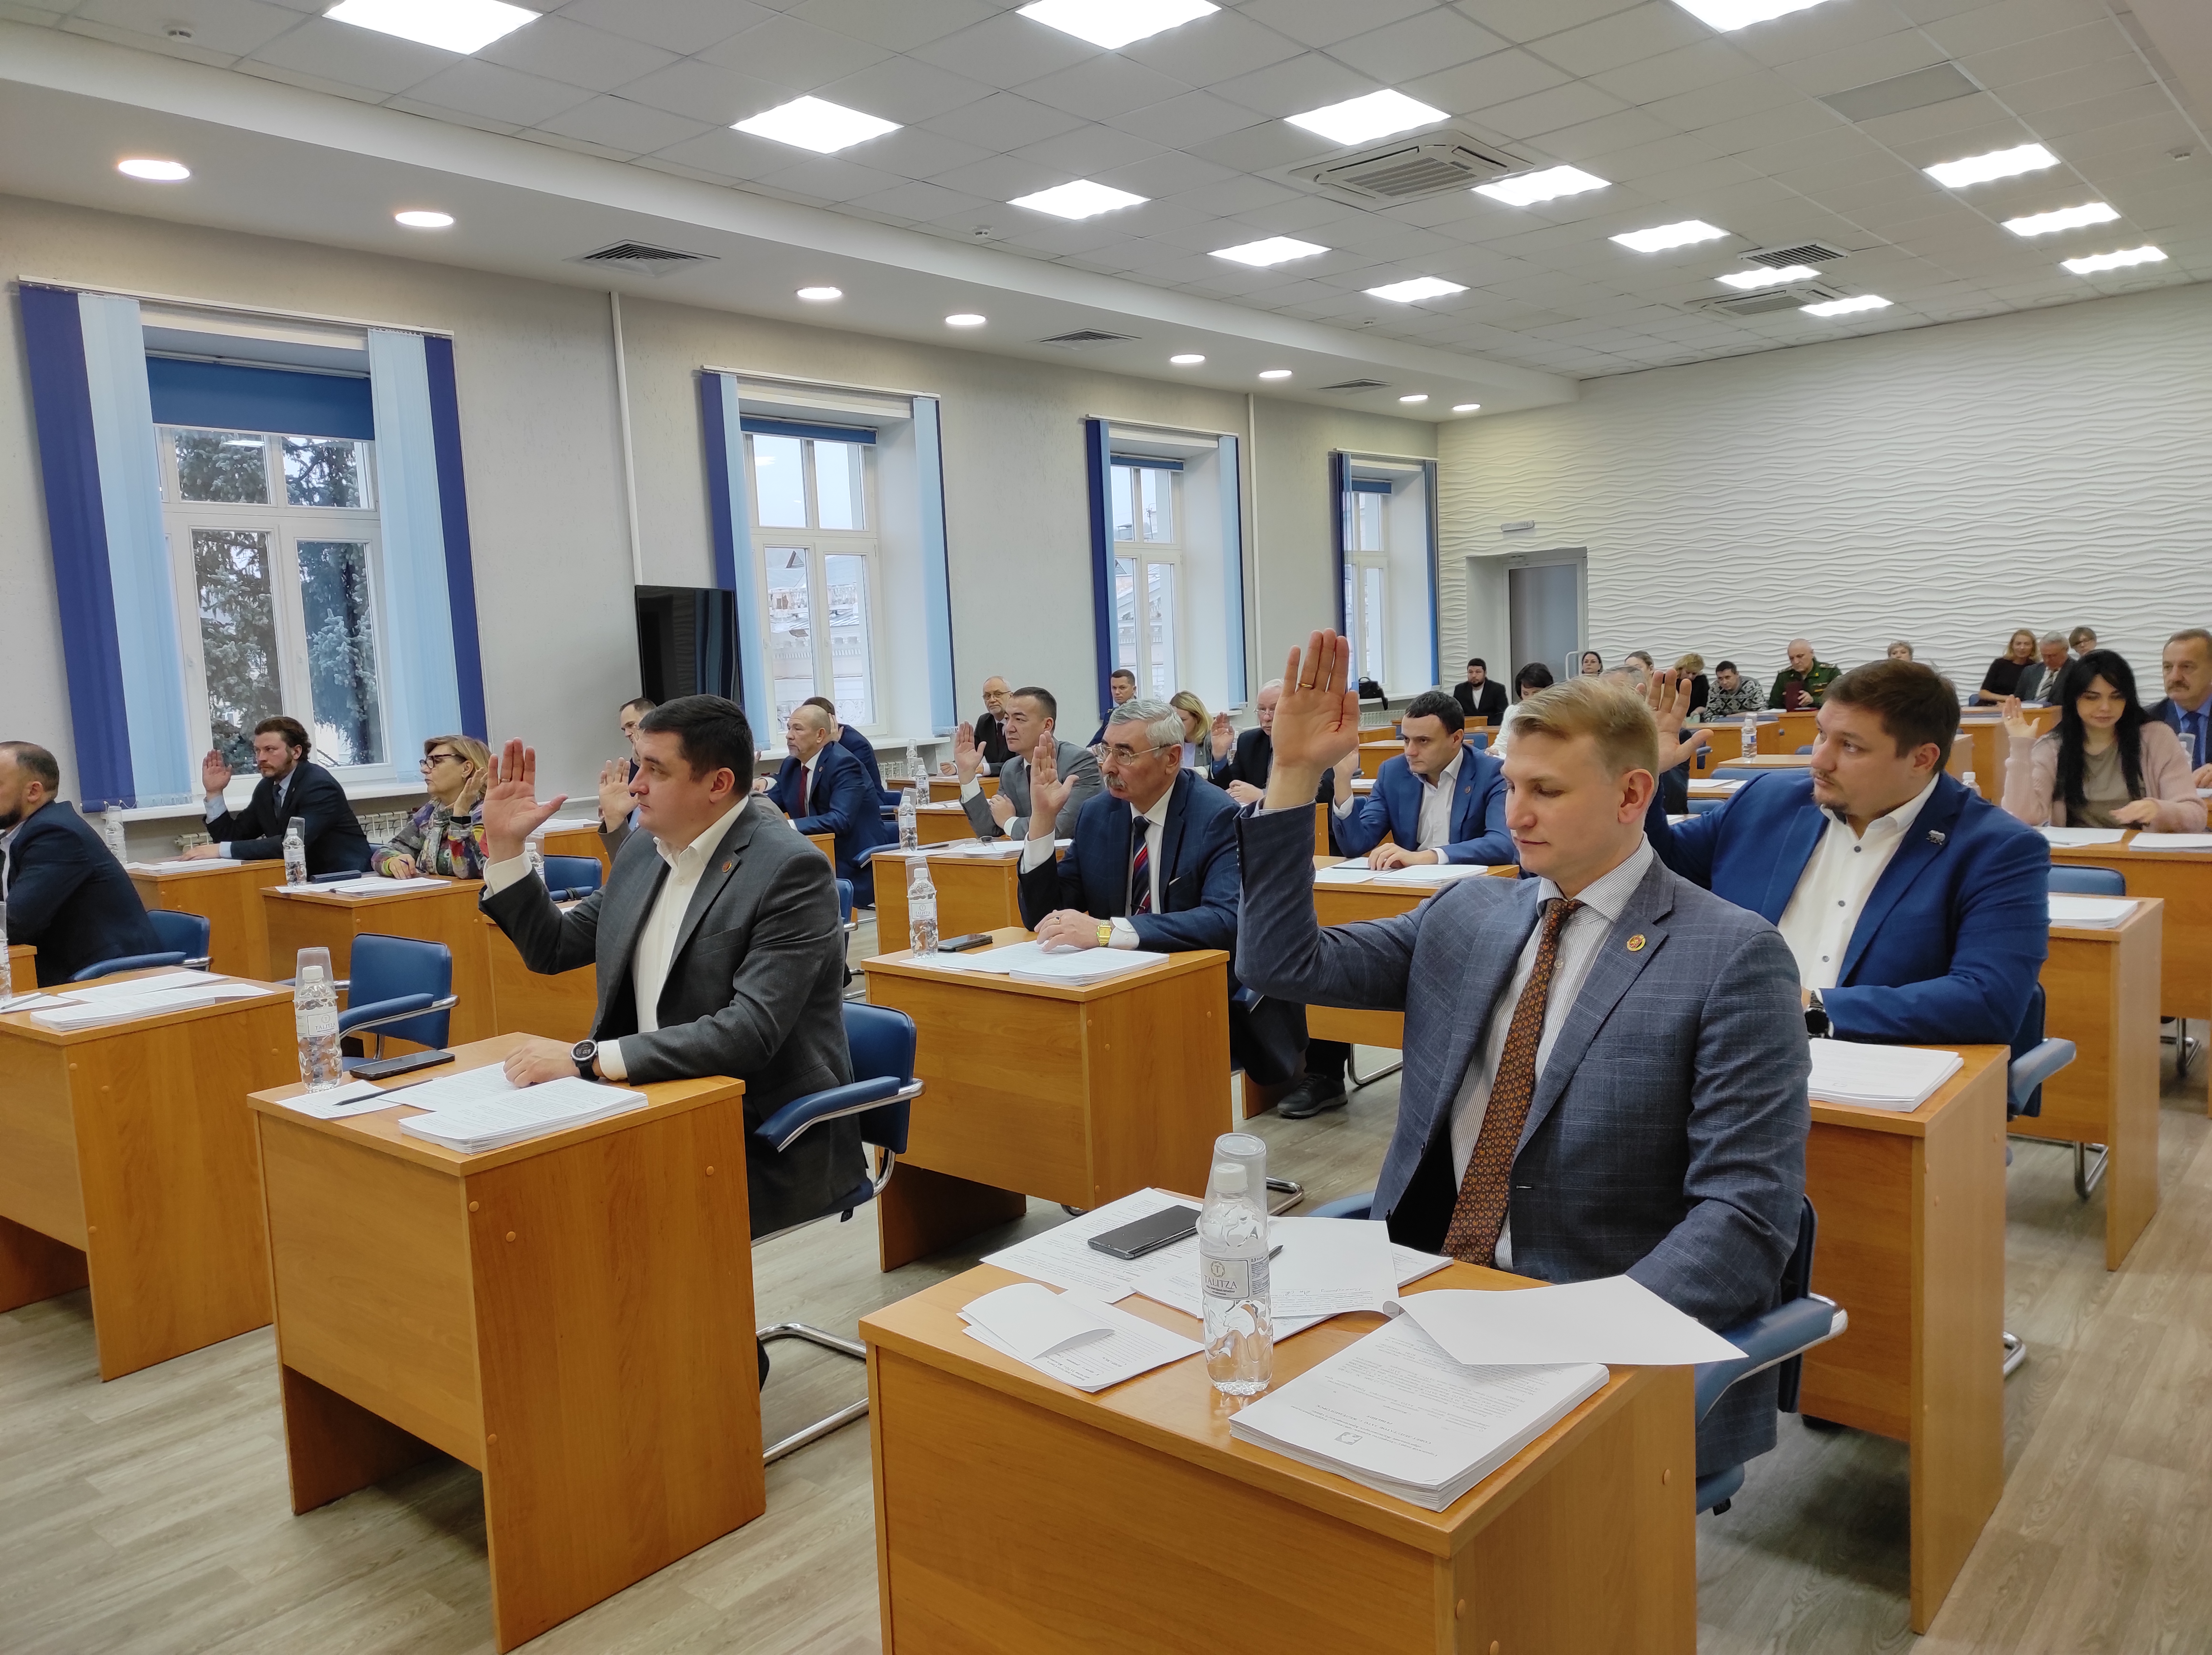 Сегодня прошло заседание 35-й внеочередной сессии Совета депутатов ЗАТО г. Железногорск.